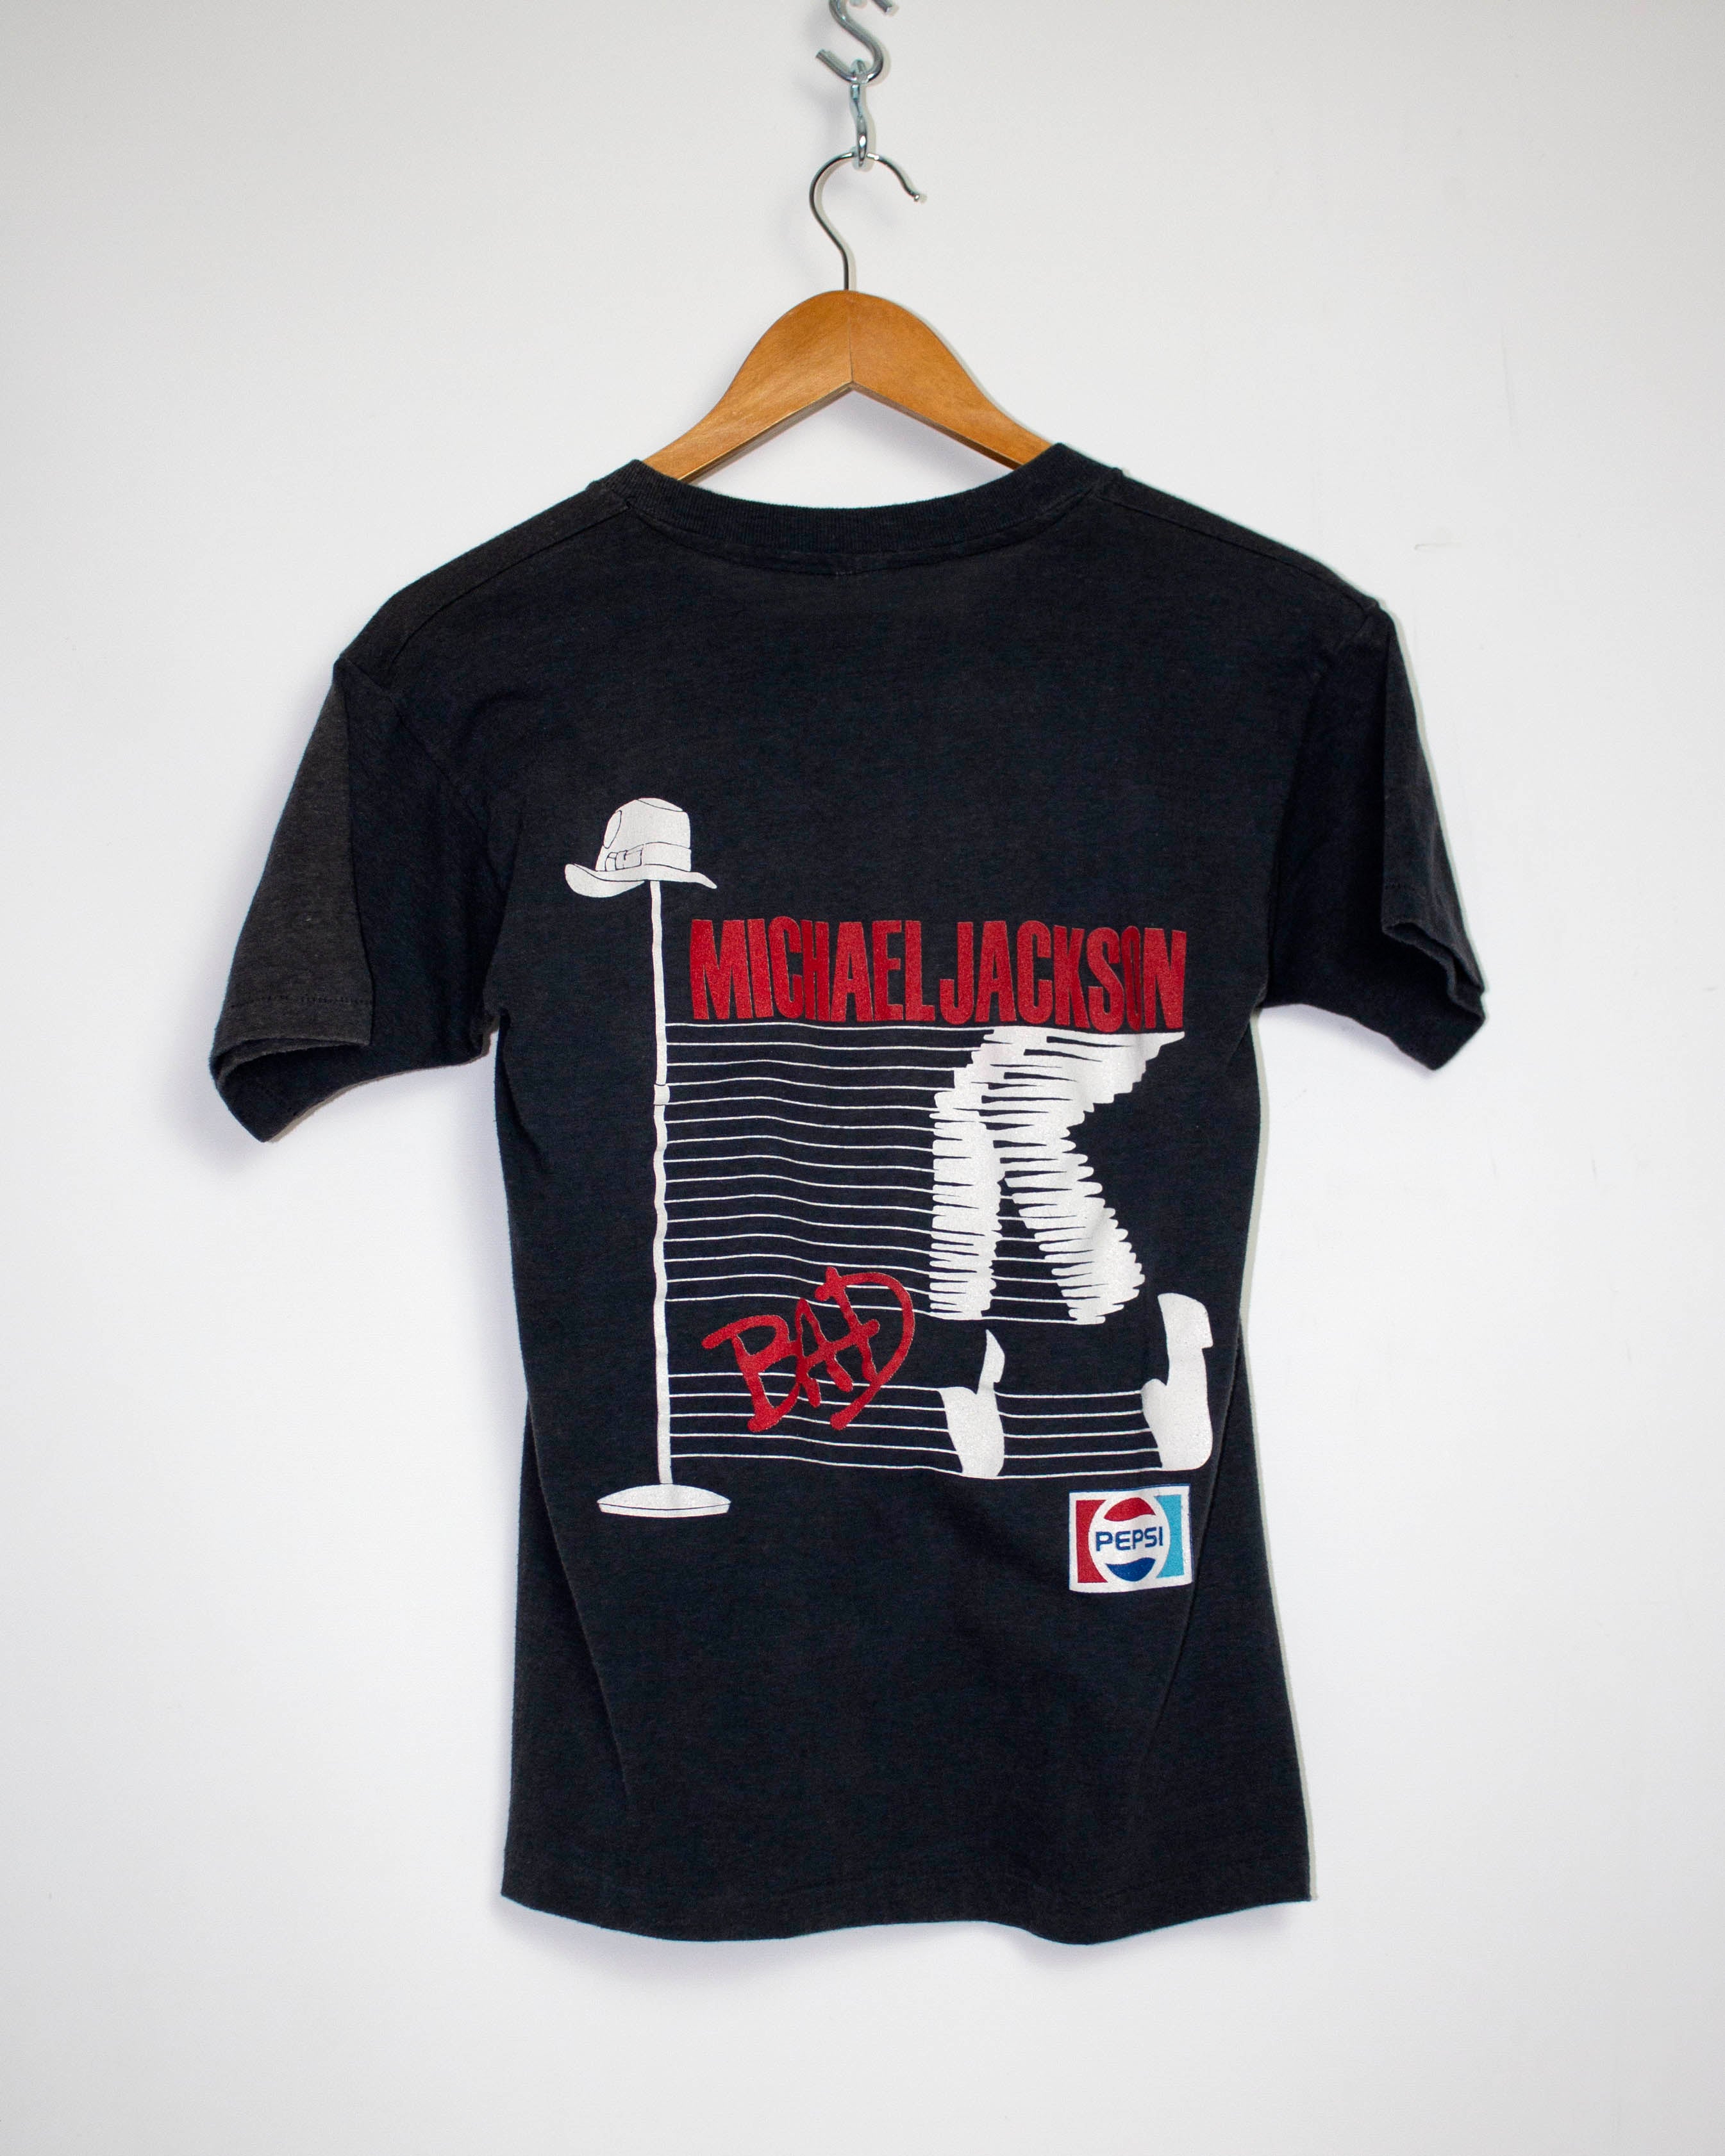 Vintage Michael Jackson 1988 Bad Tour T-Shirt Sz M